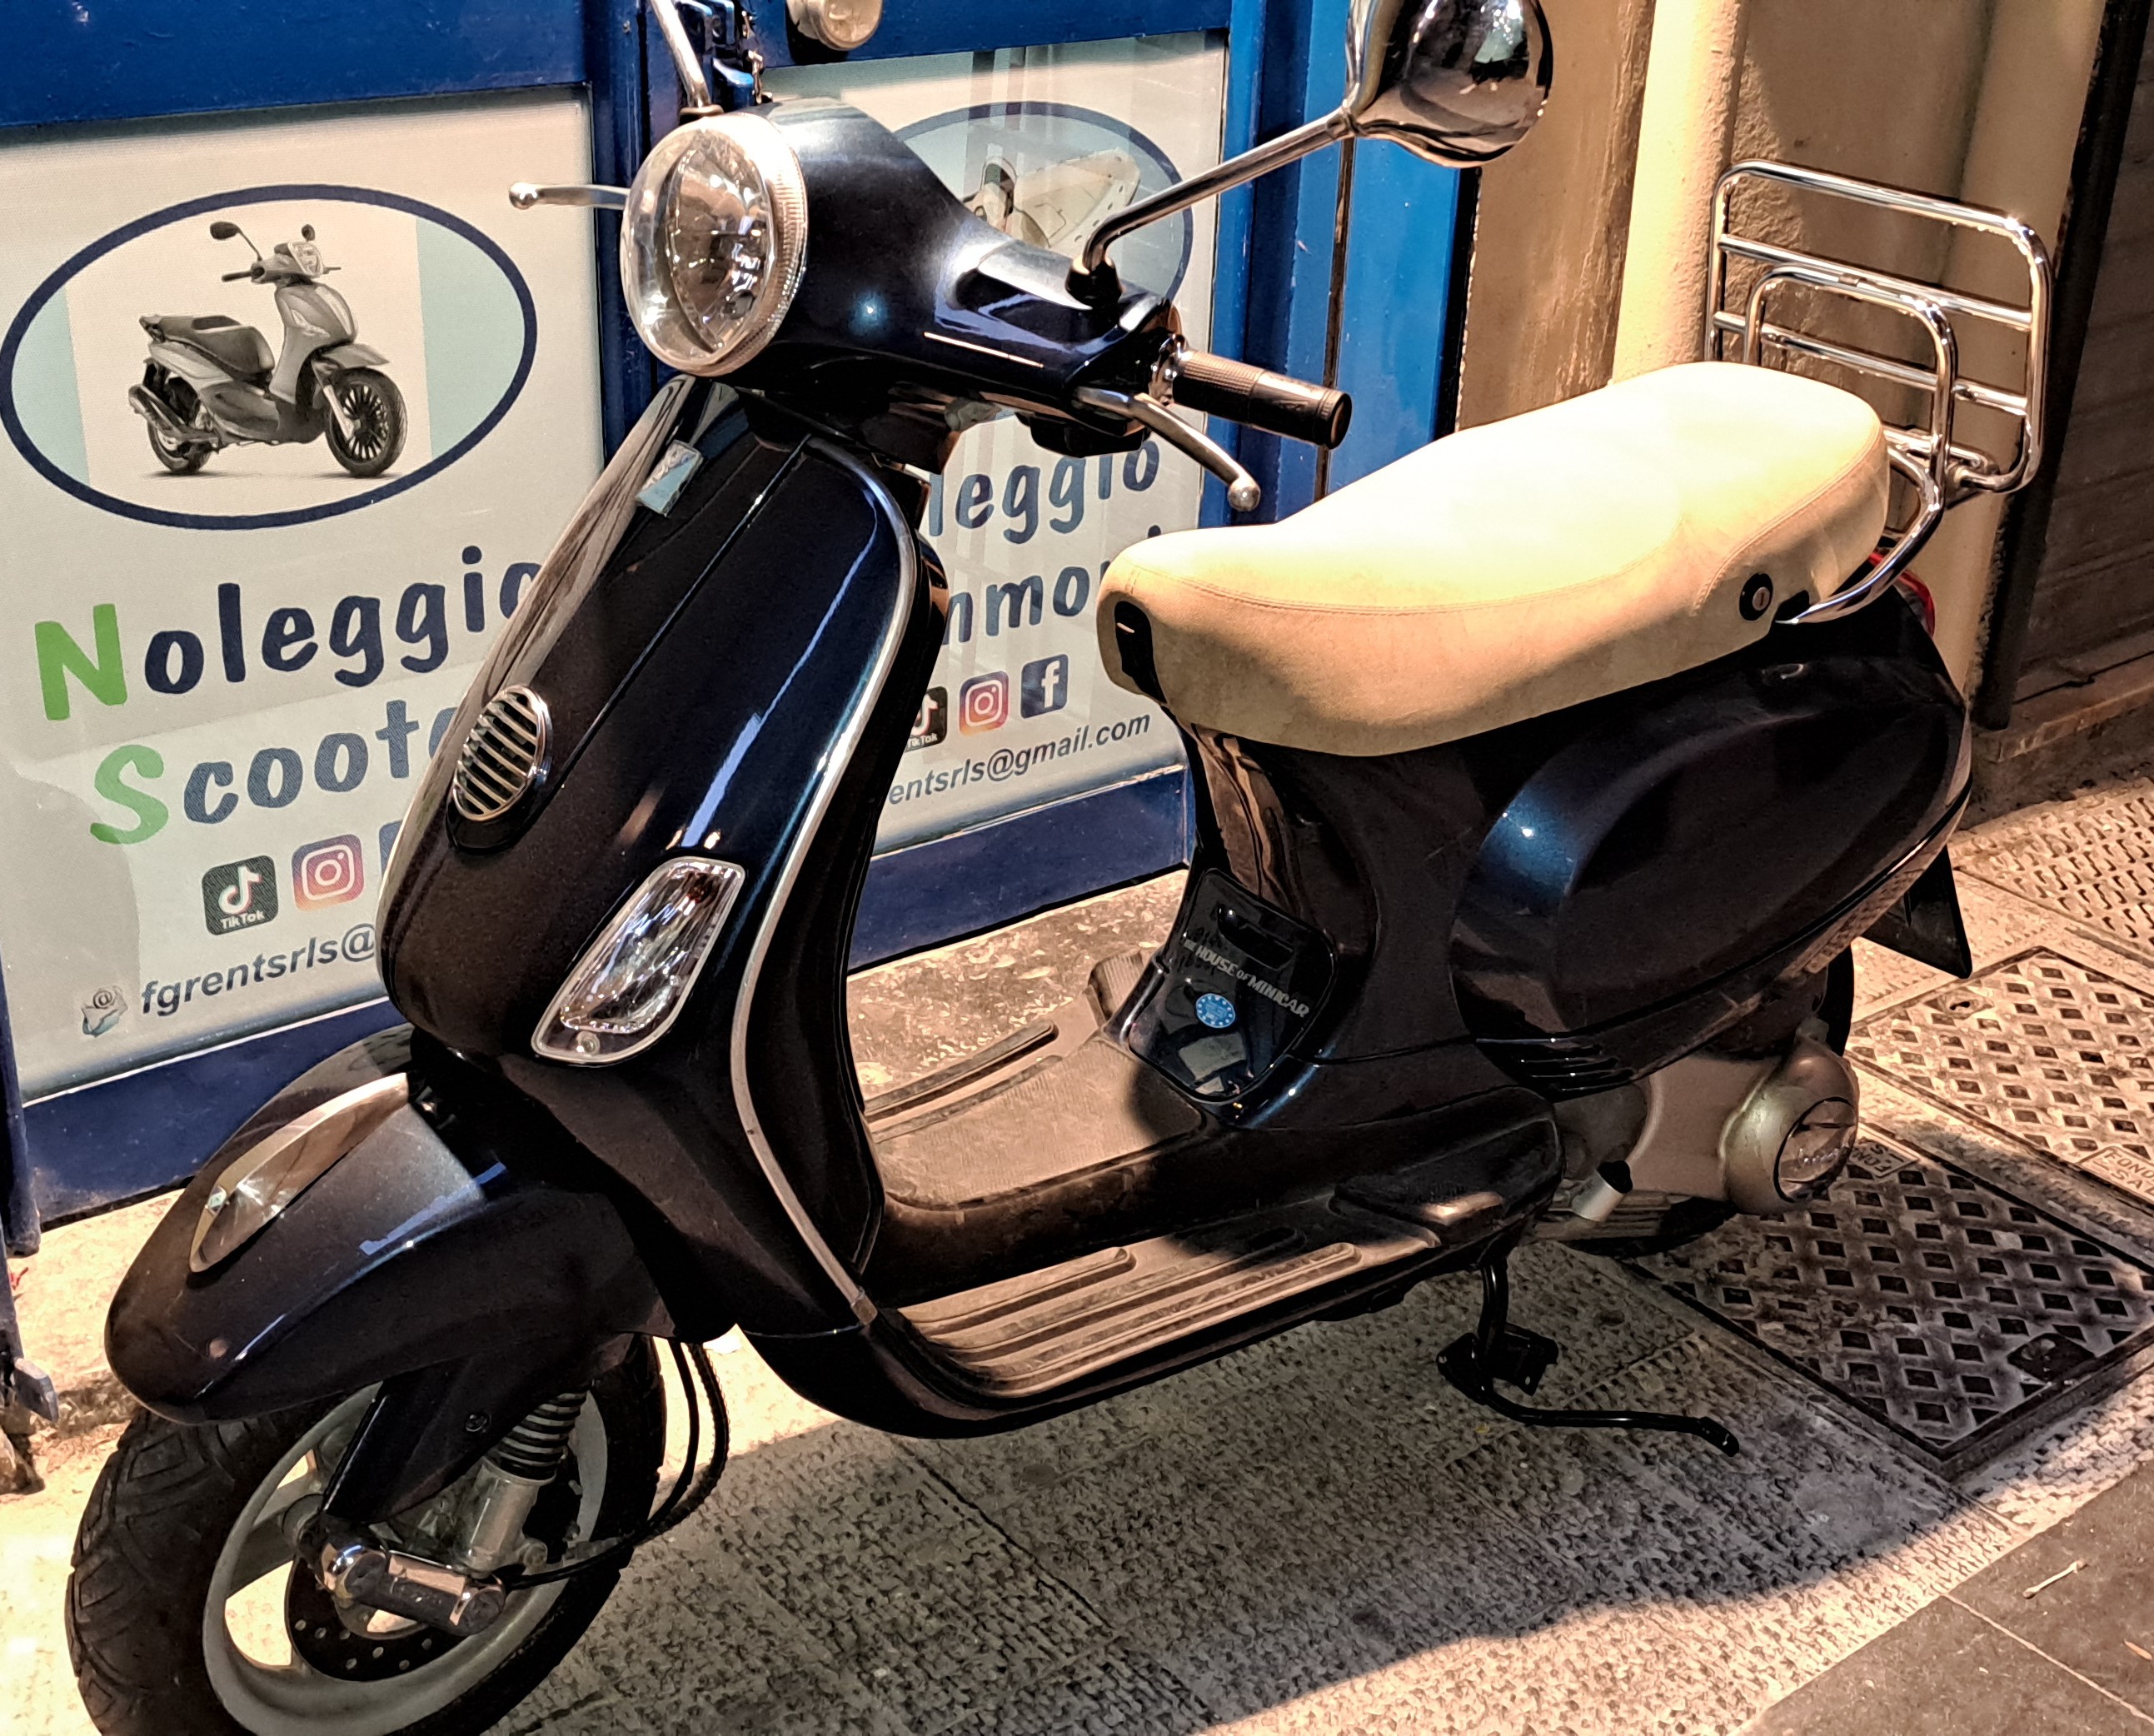 Noleggio Moto vespa lx 150 Napoli